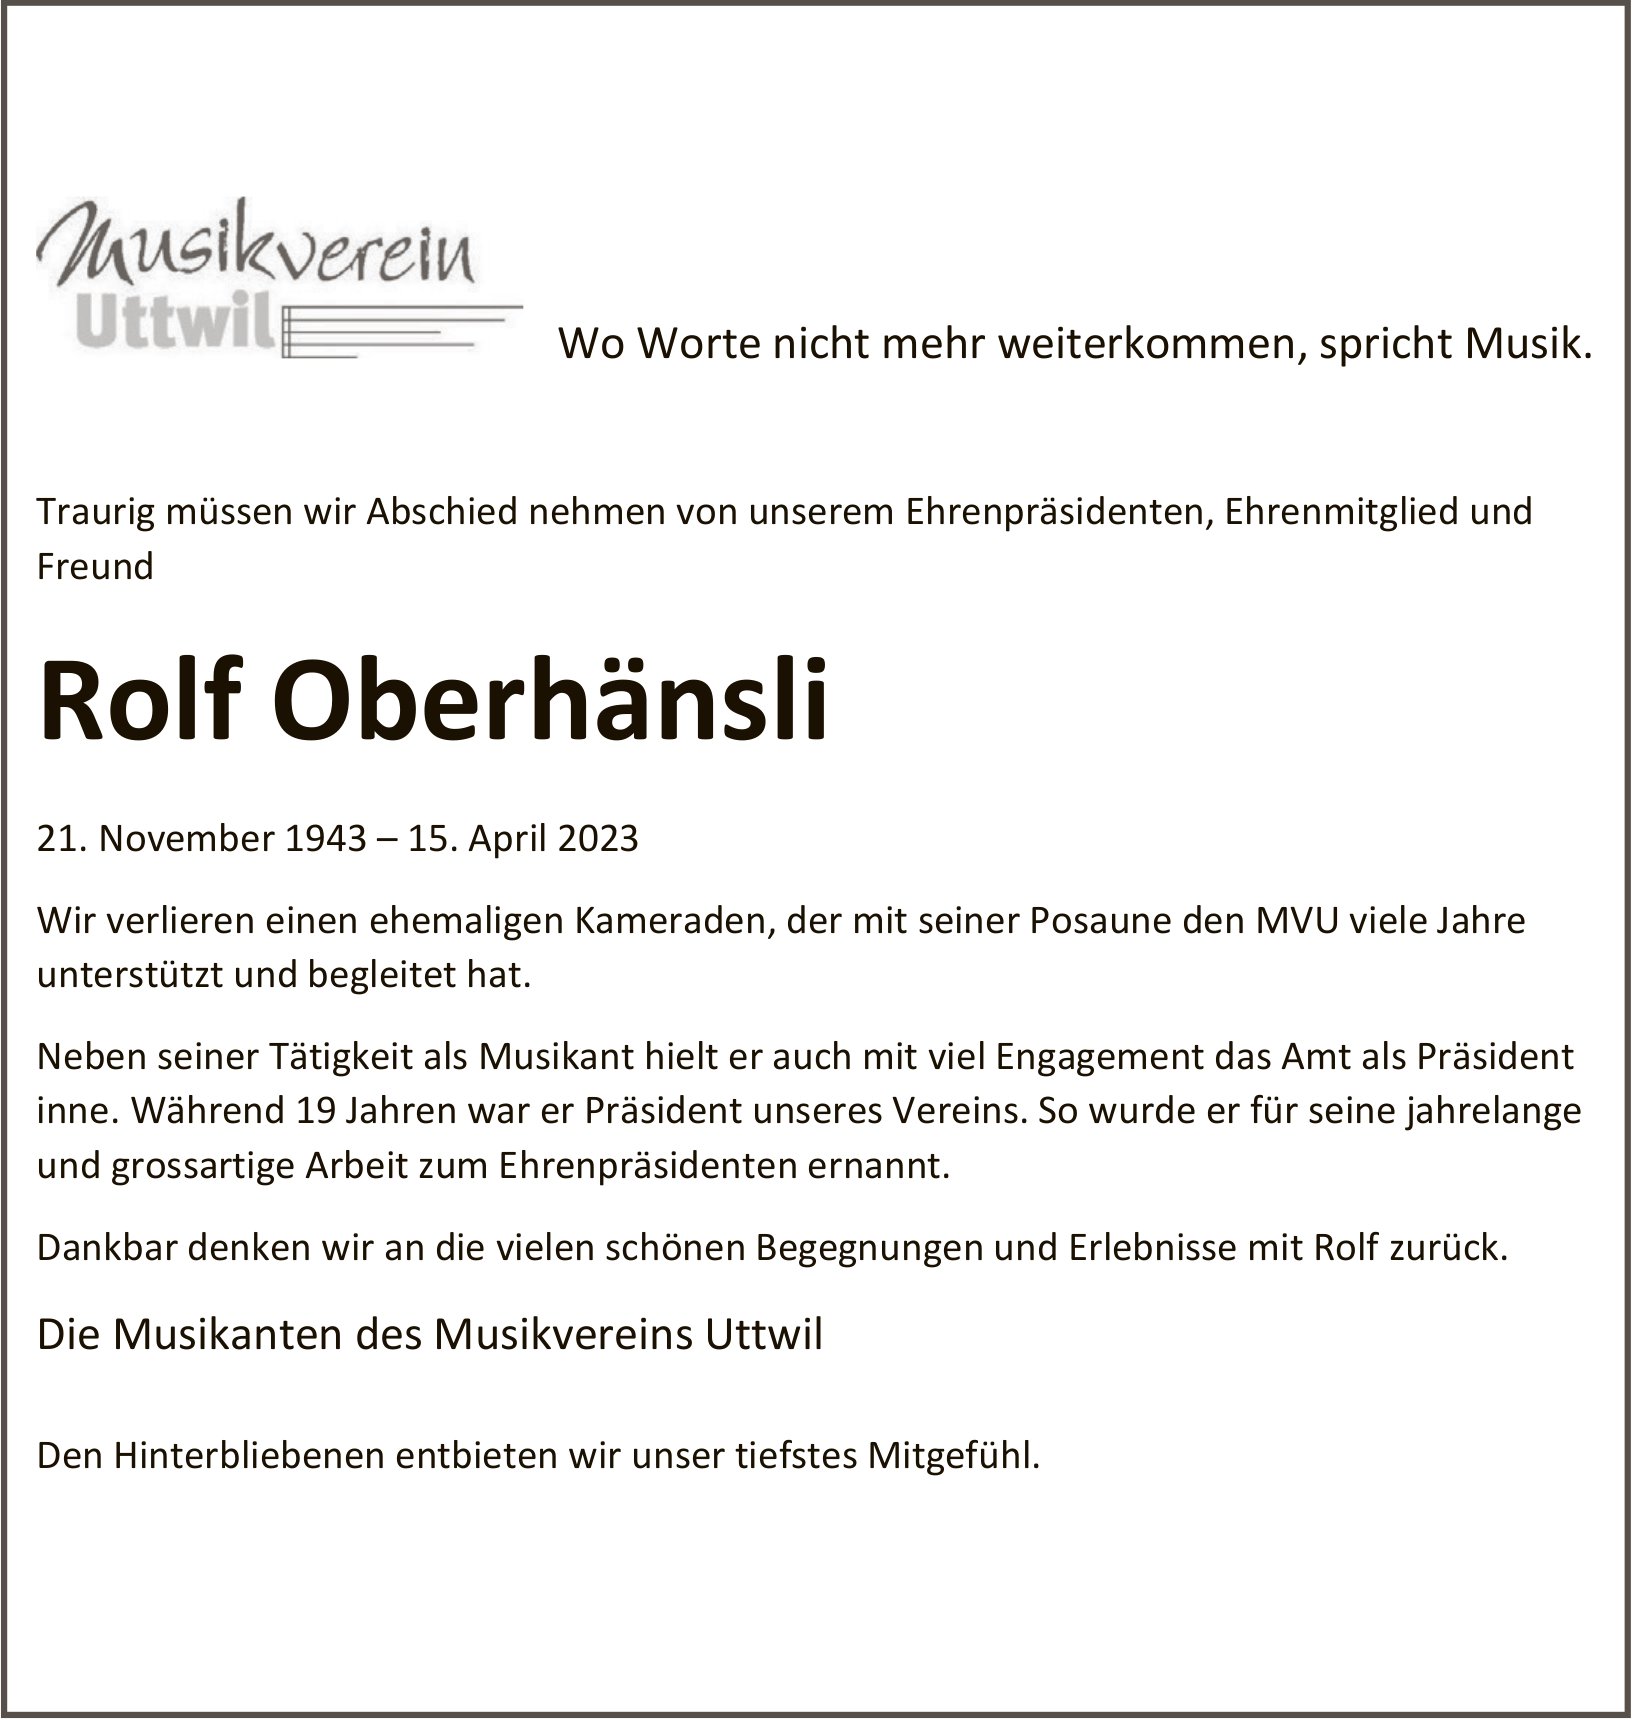 Oberhänsli Rolf, April 2023 / TA